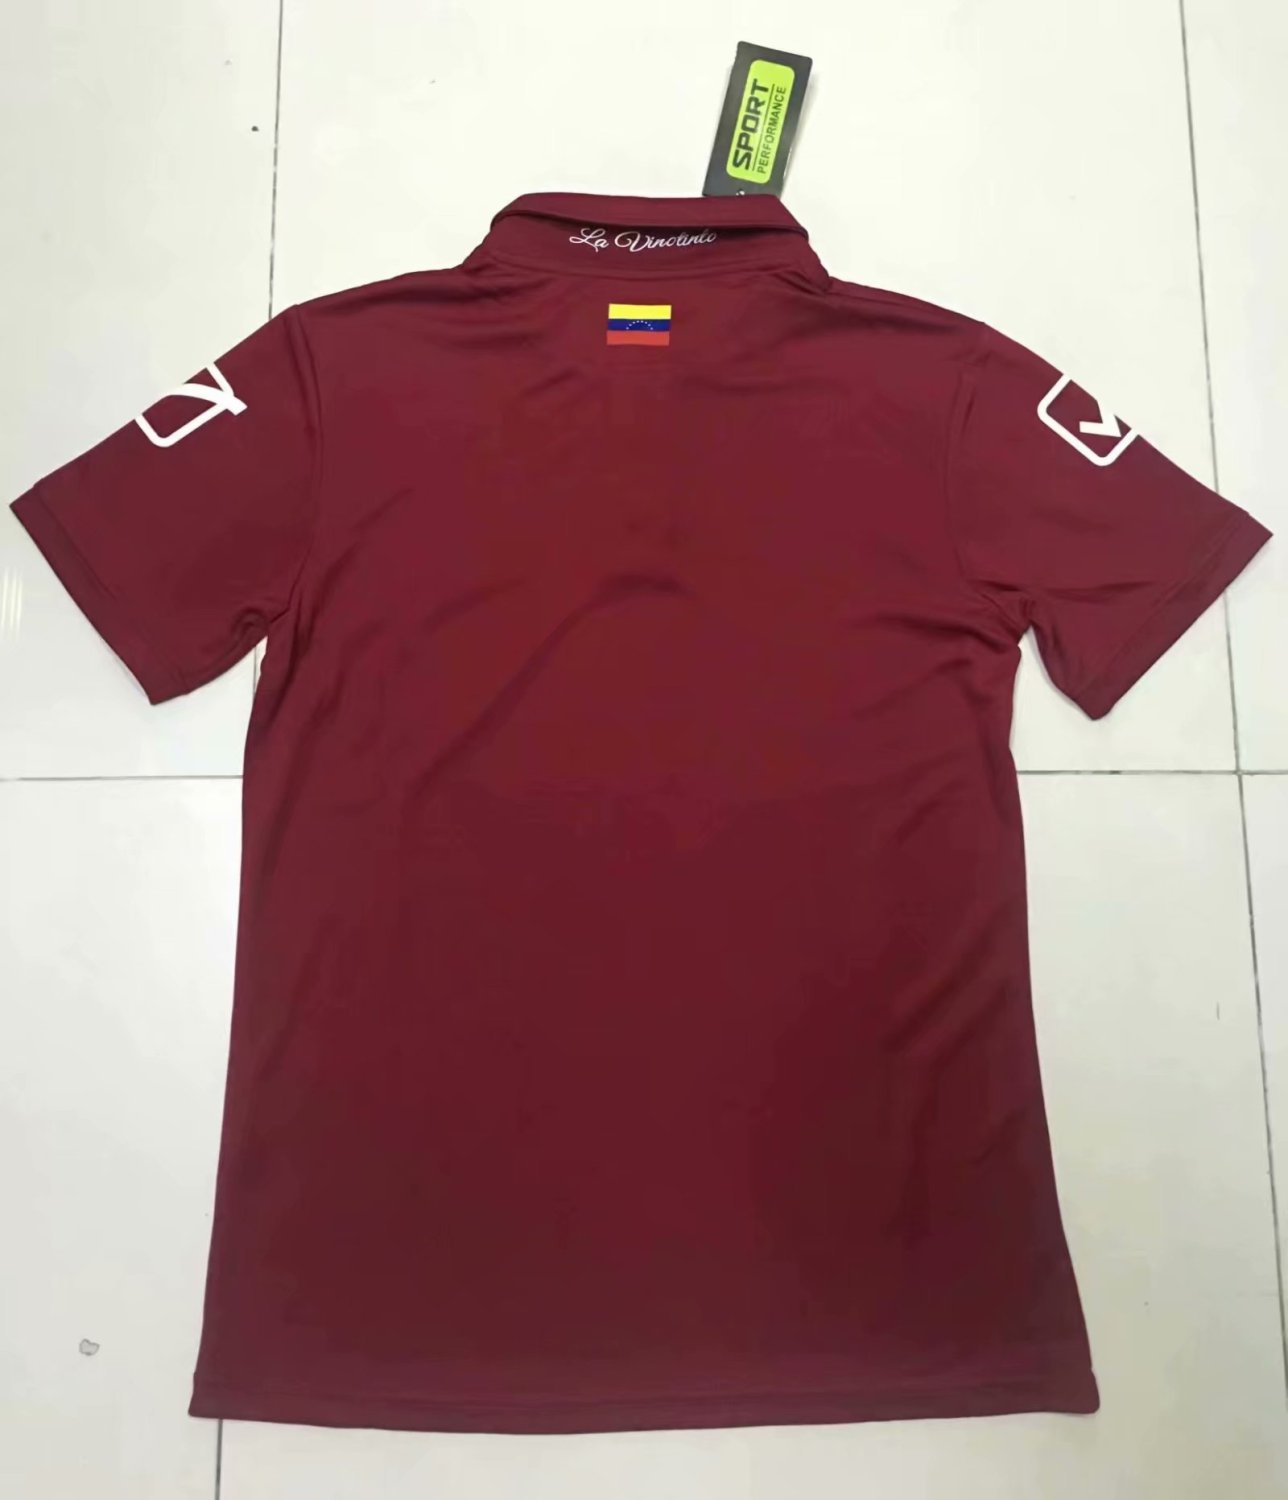 19/20 Men Venezuela Home Soccer Jerseys Football Shirt